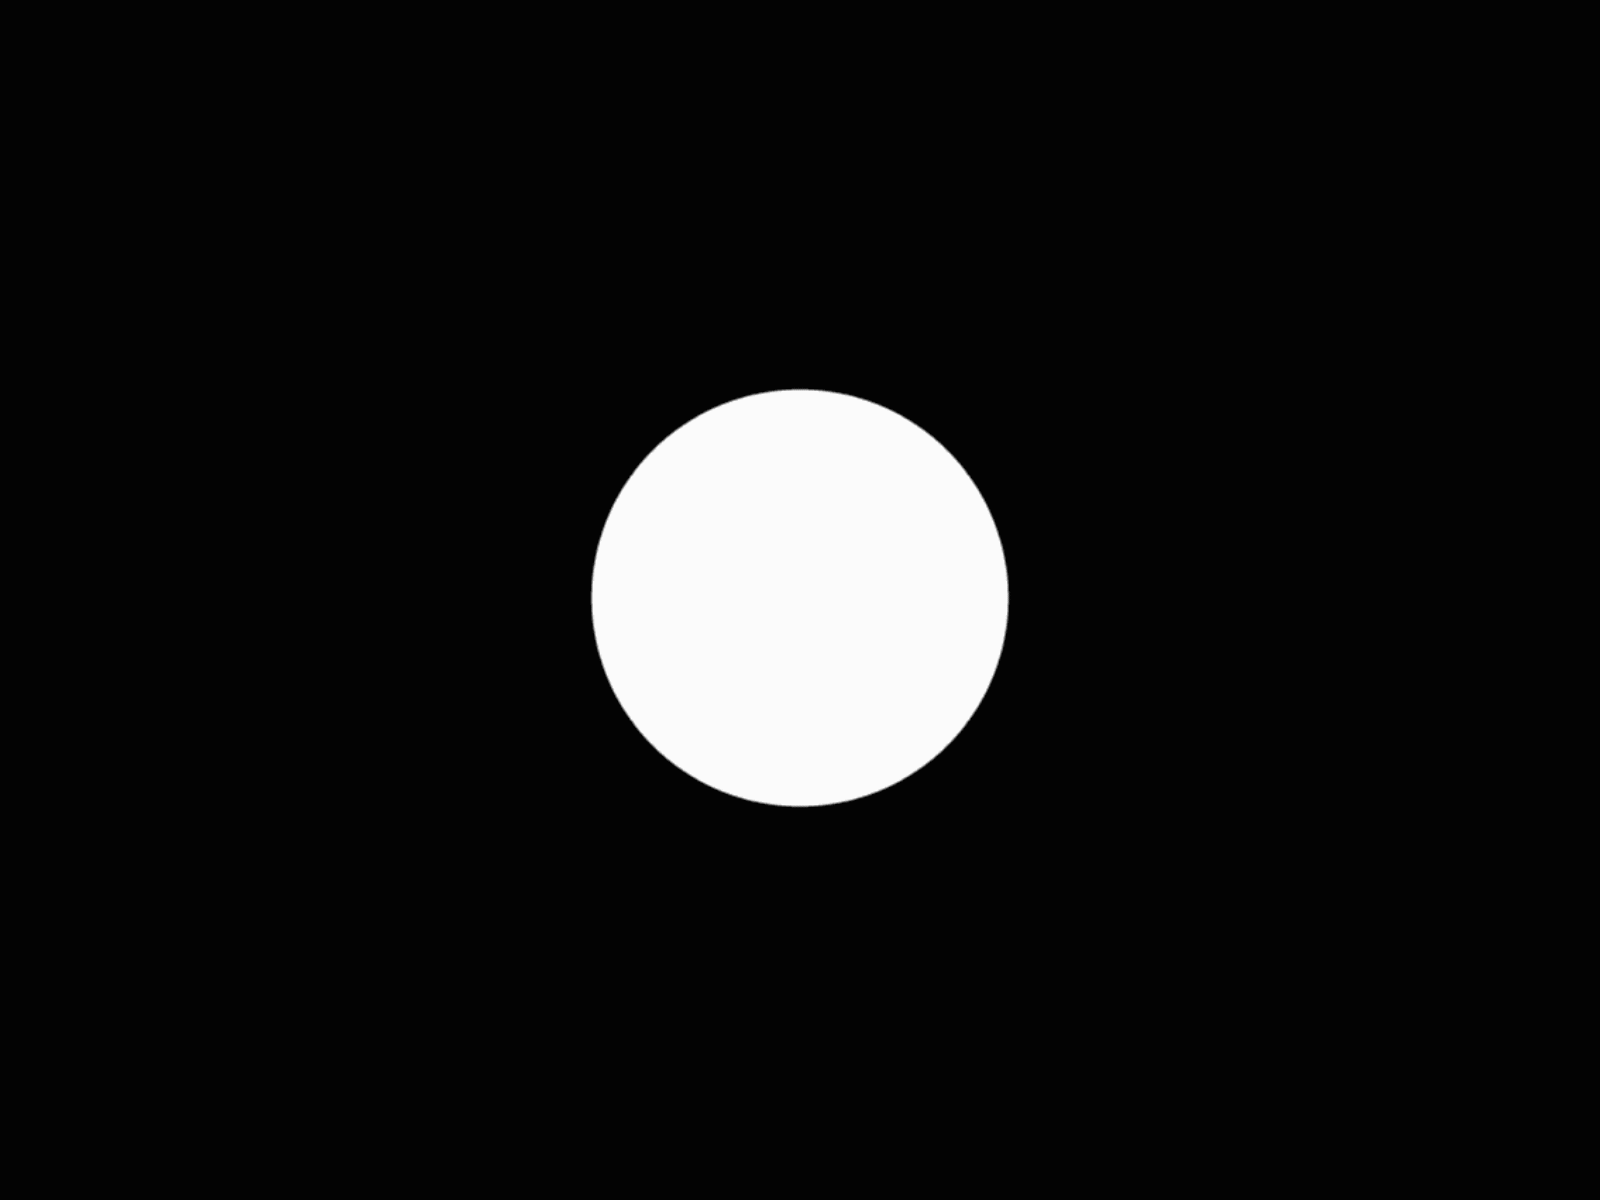 Белый круг на черном фоне. Черный круг на прозрачном фоне. Кружок на черном фоне. Черный фон с белым кругом в центре. Белые круги на экране